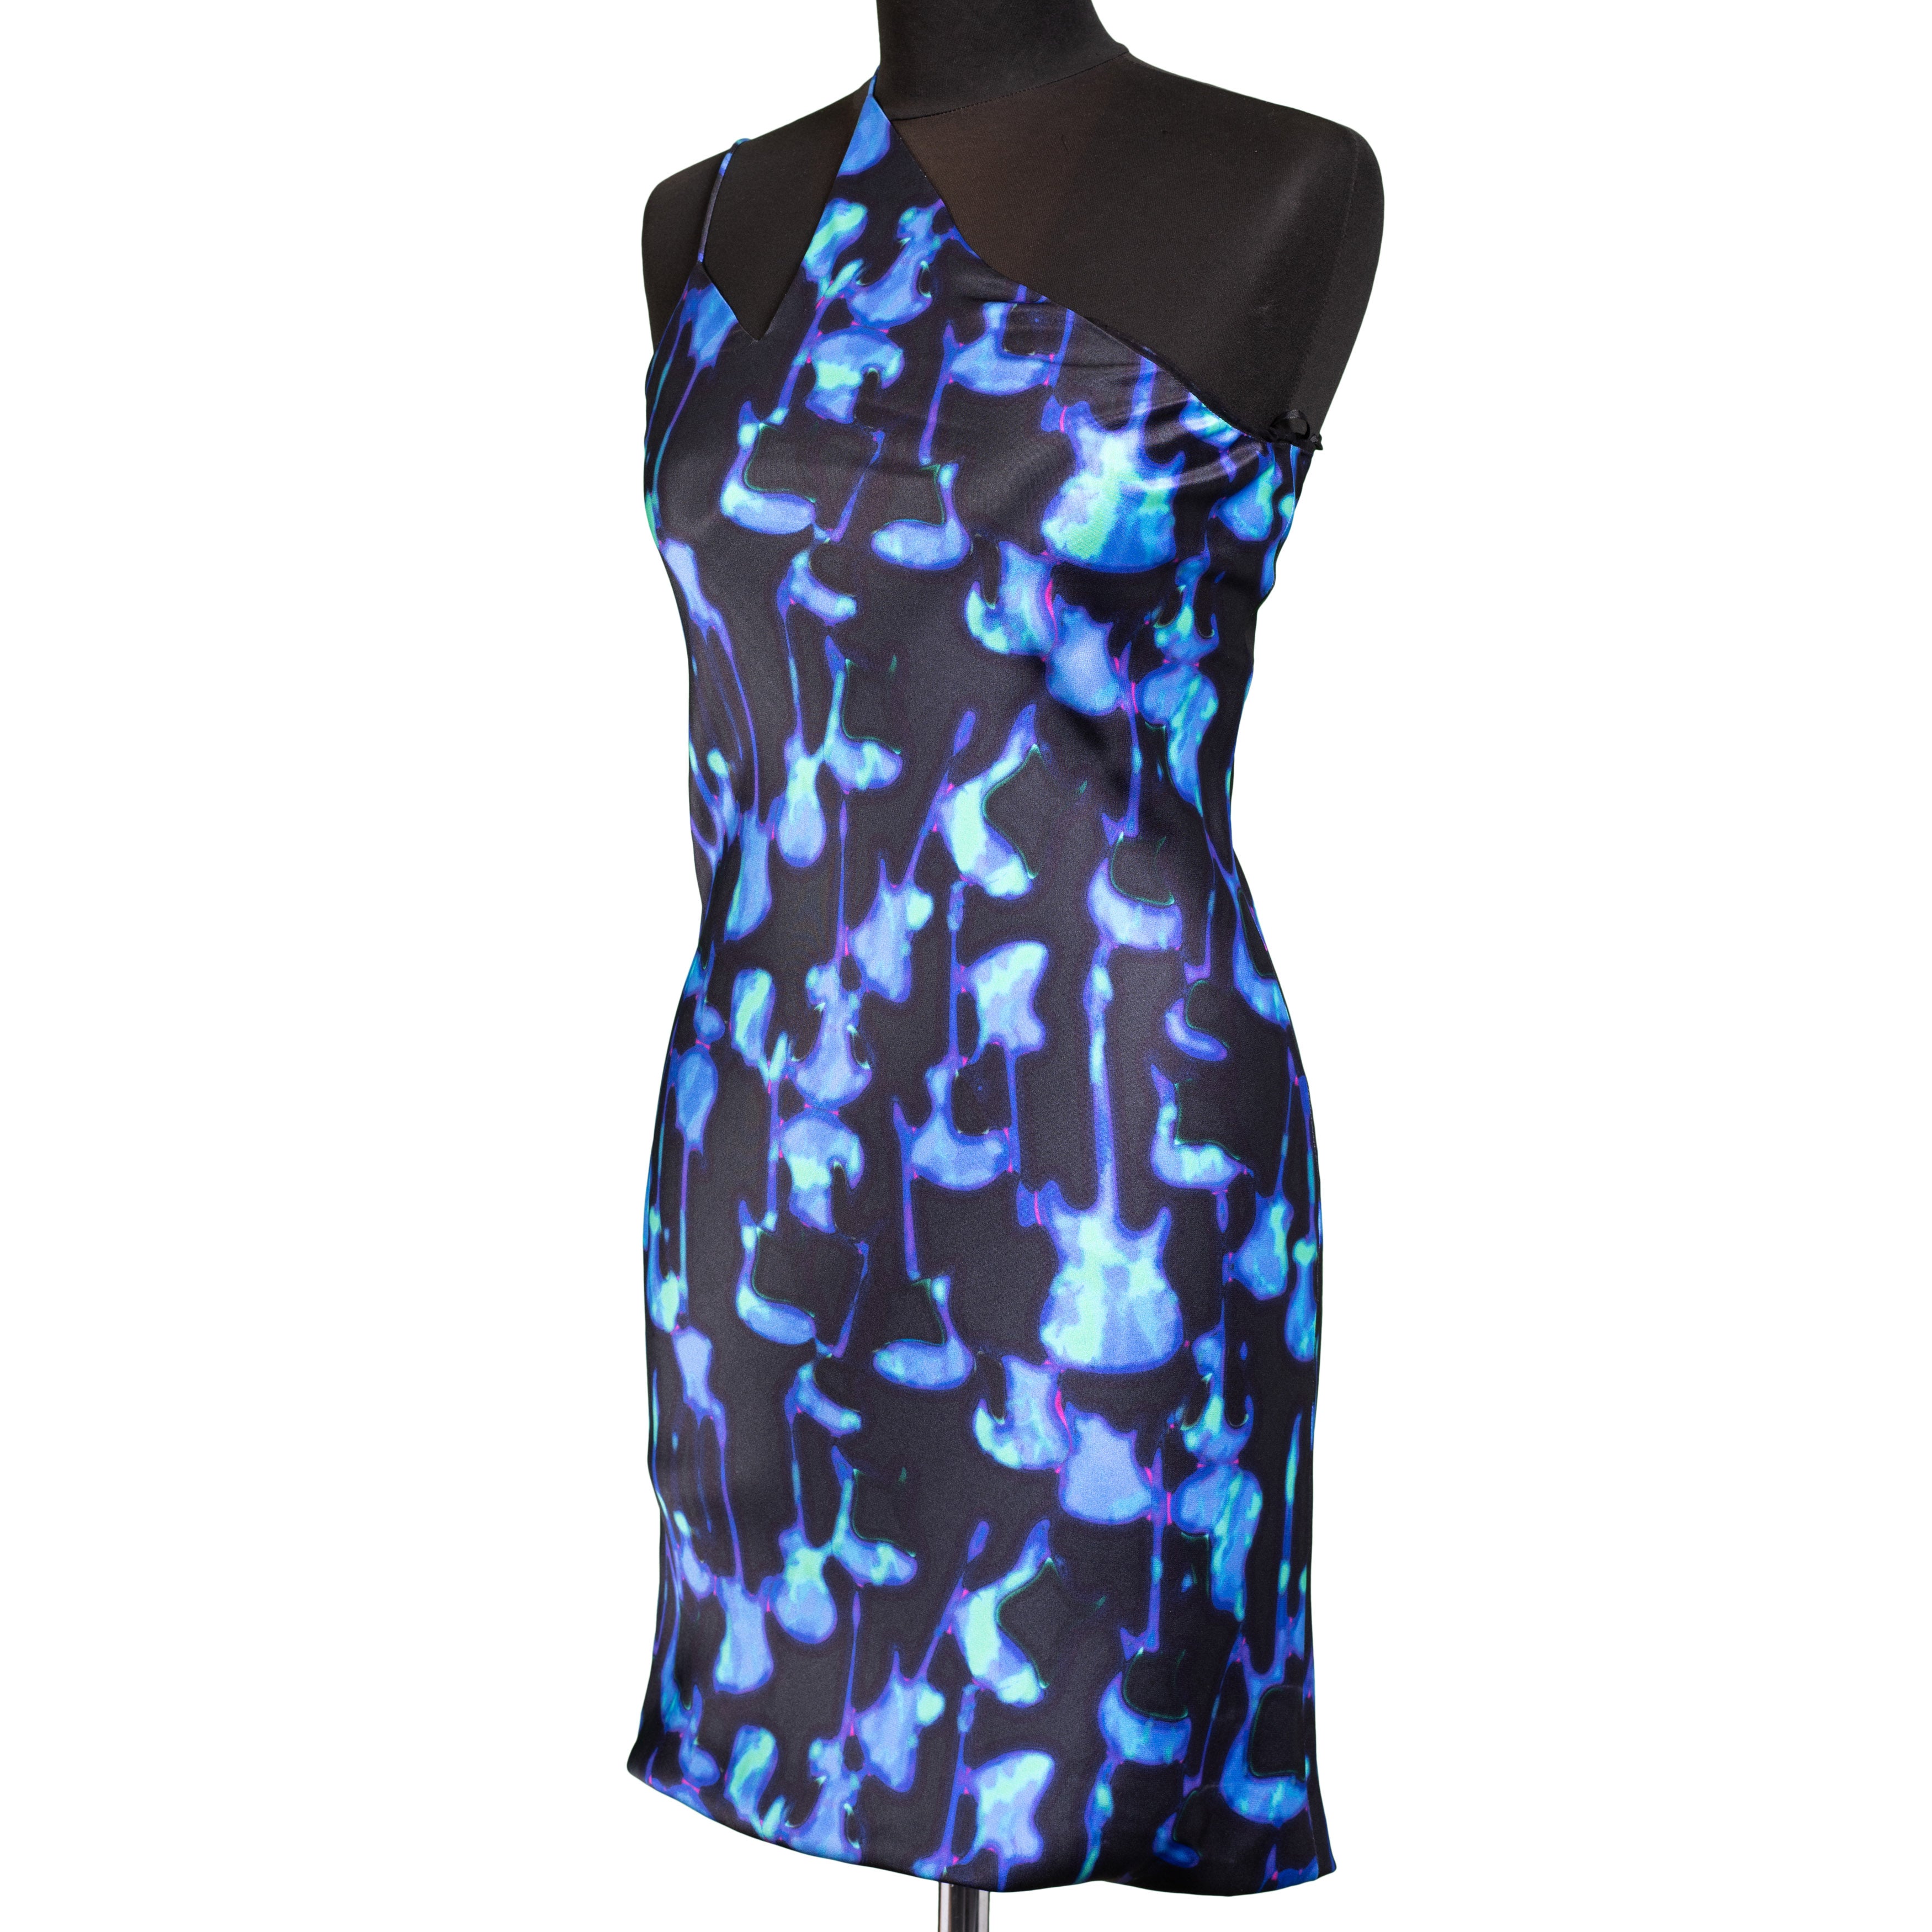 NINA RICCI PARIS Multi-Color Silk One Shoulder Dress Size FR 36 NEW US 4 WOMEN'S BOUTIQUE